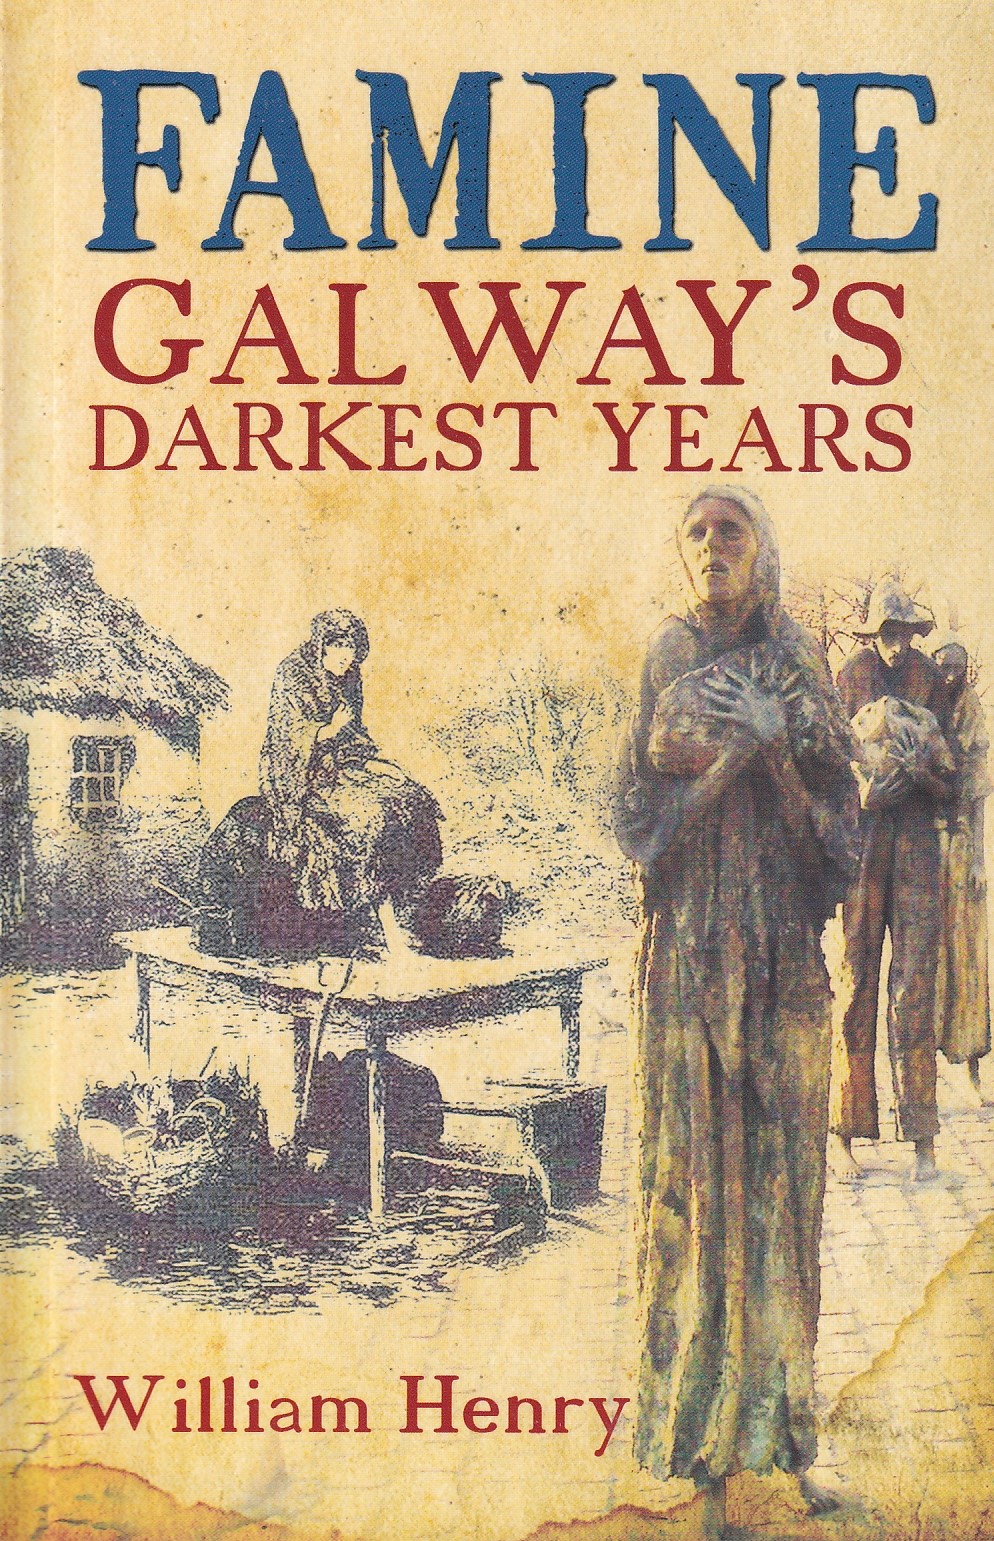 Famine: Galway’s Darkest Years by William Henry